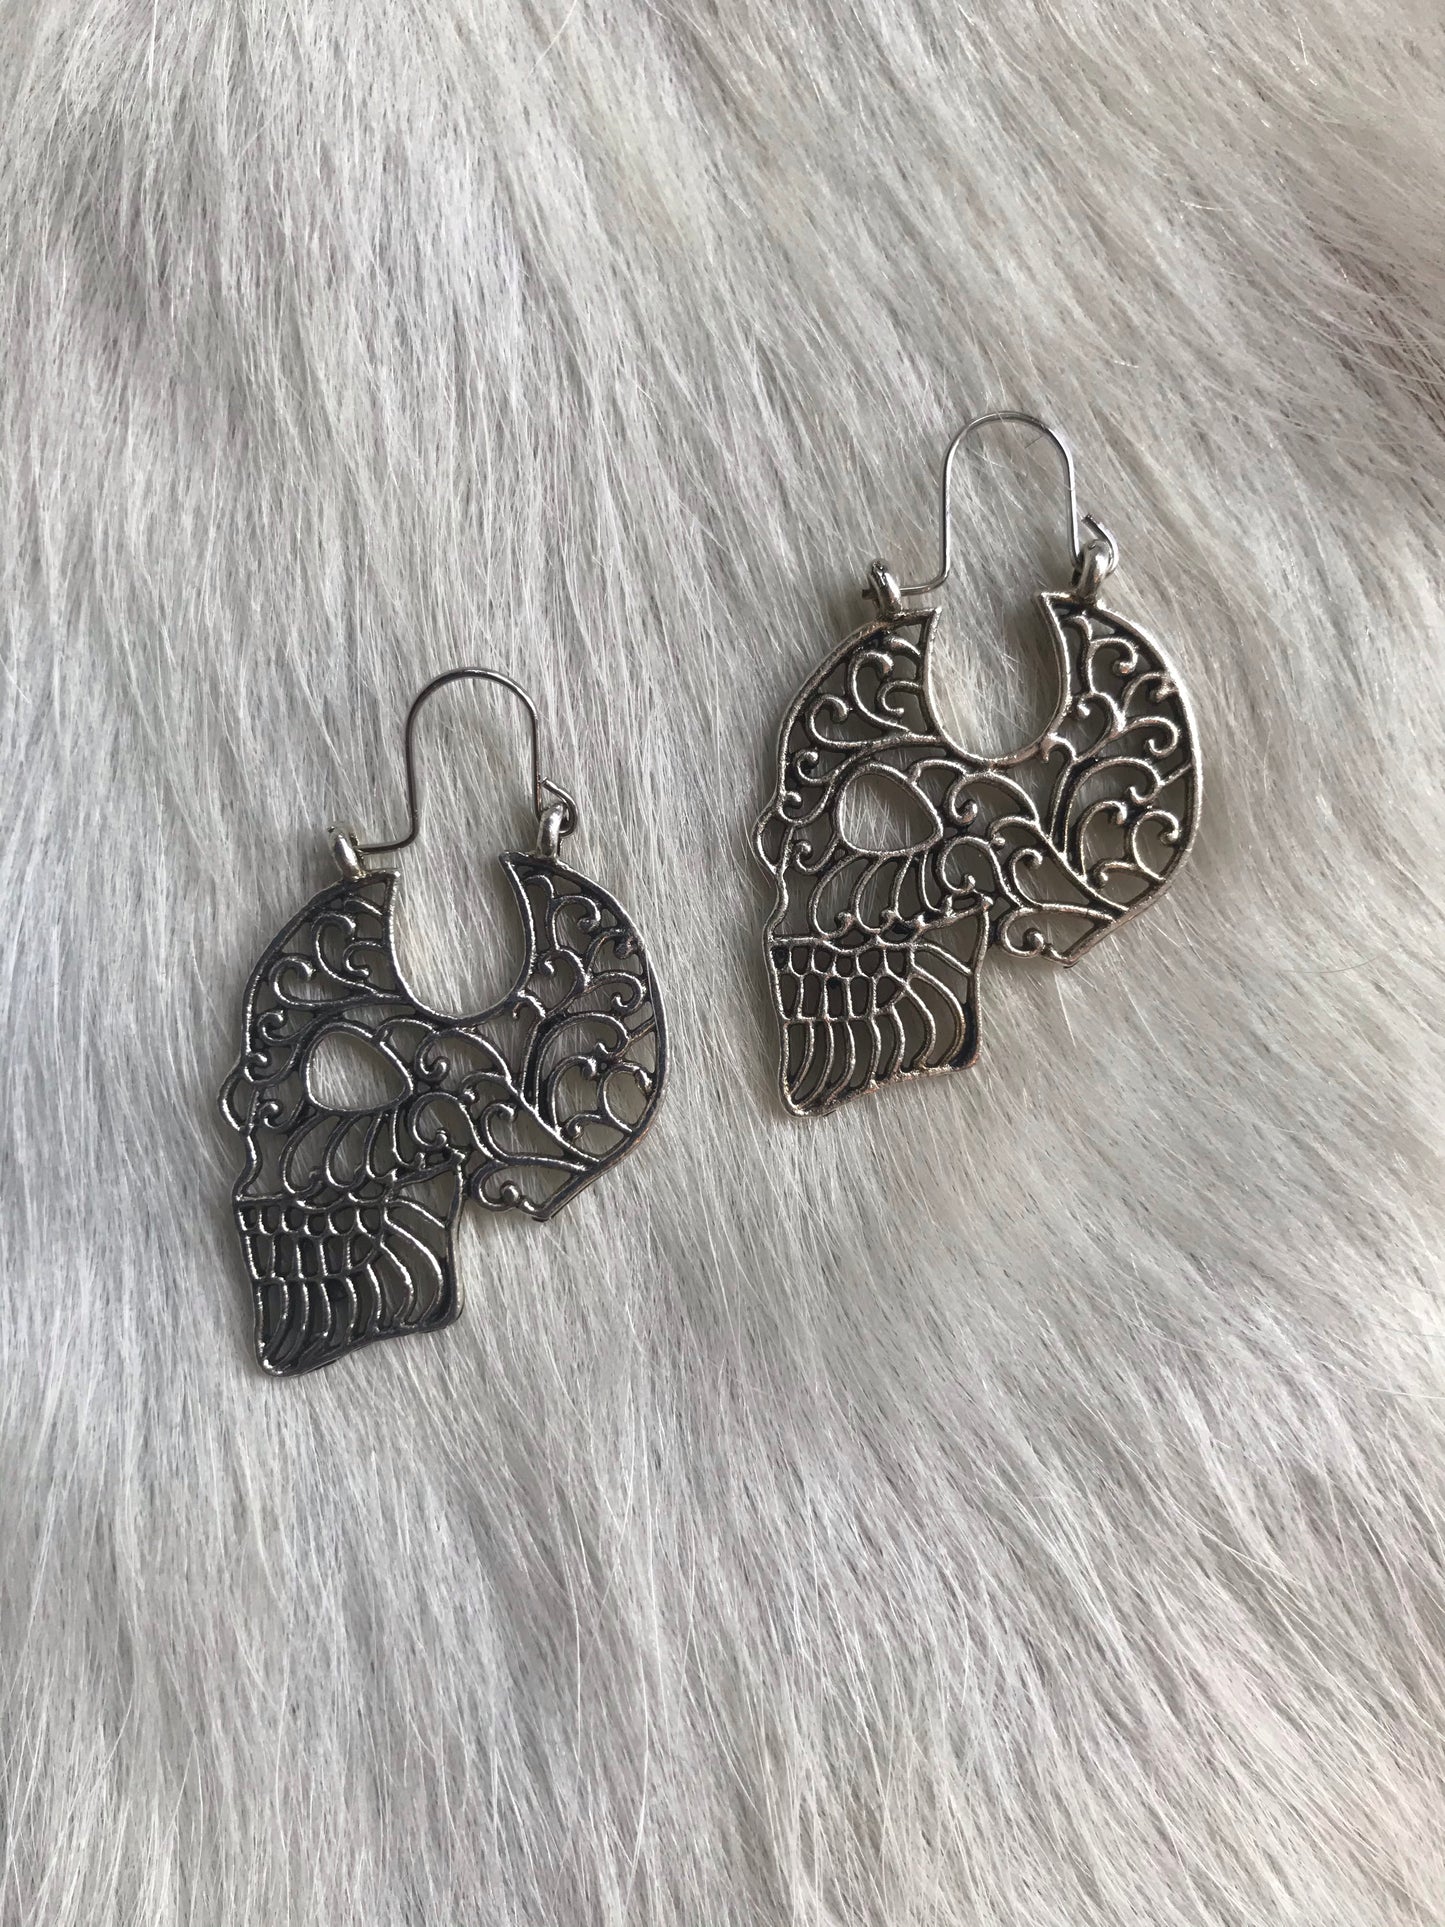 Intricate Design Skull Earrings